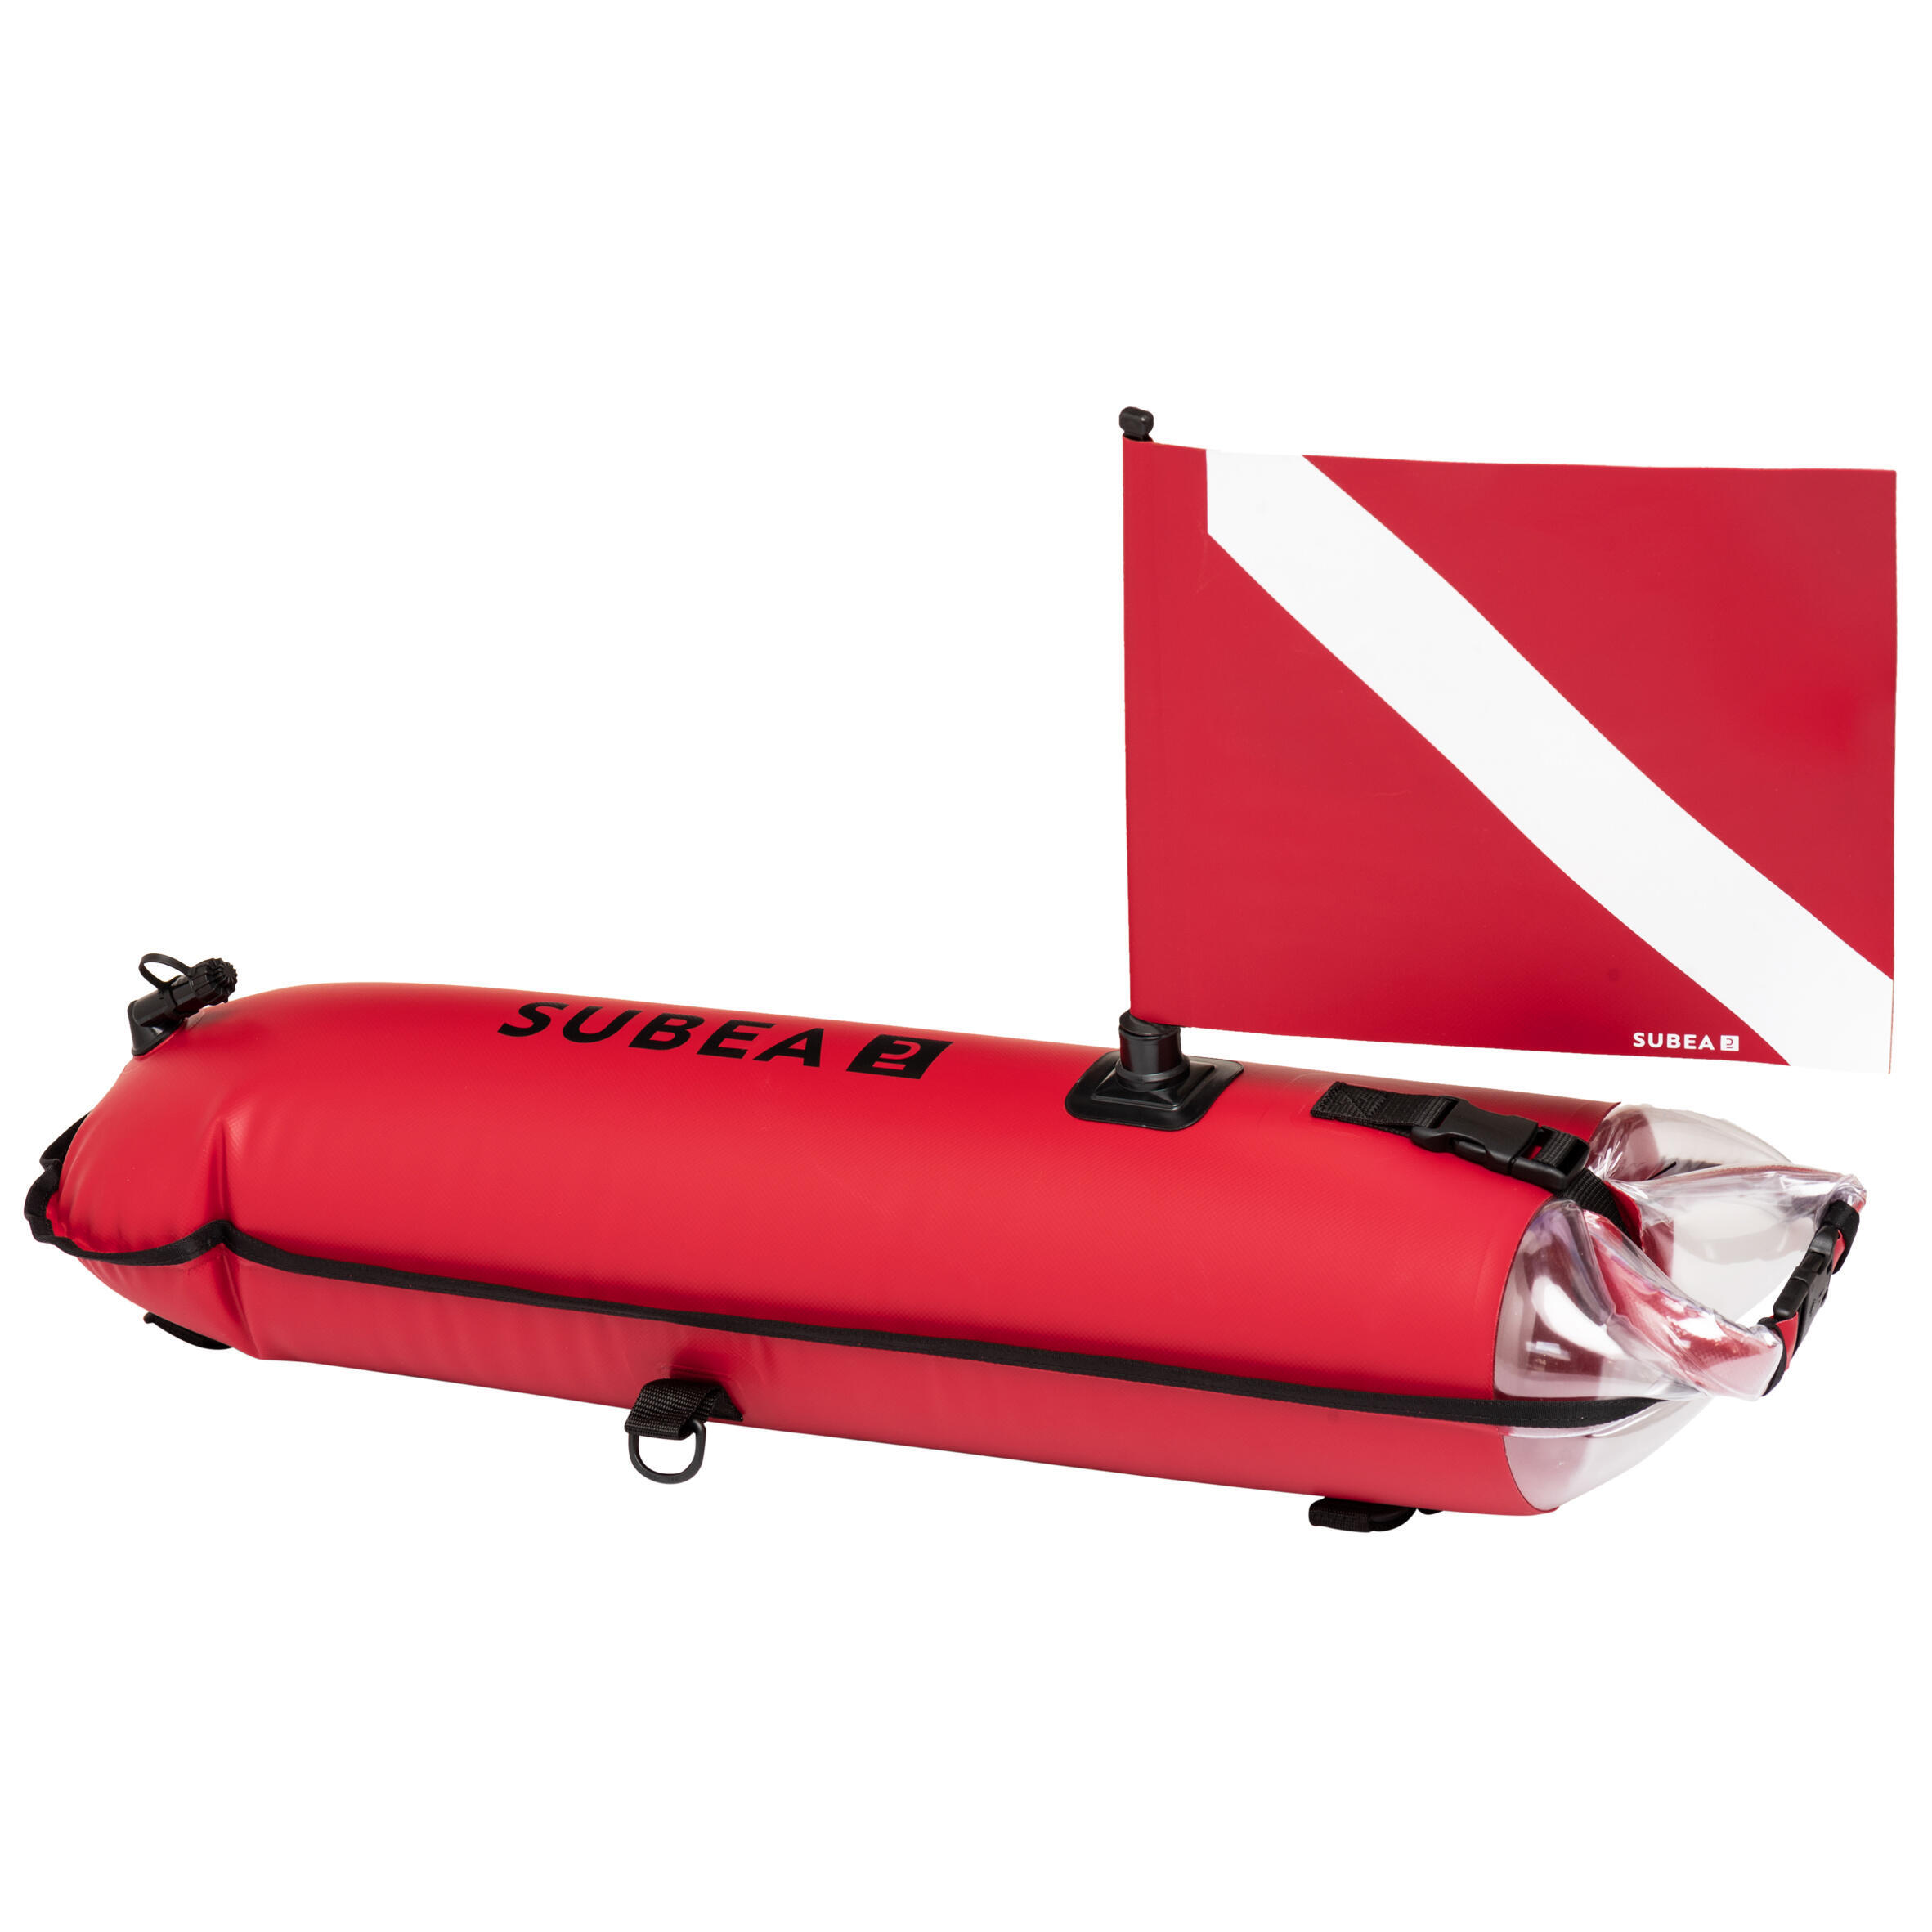 Сигнальный буй SPF 500 водонепроницаемая сумка для фридайвинга SUBEA, кораллово-красный сигнальный буй 10005093